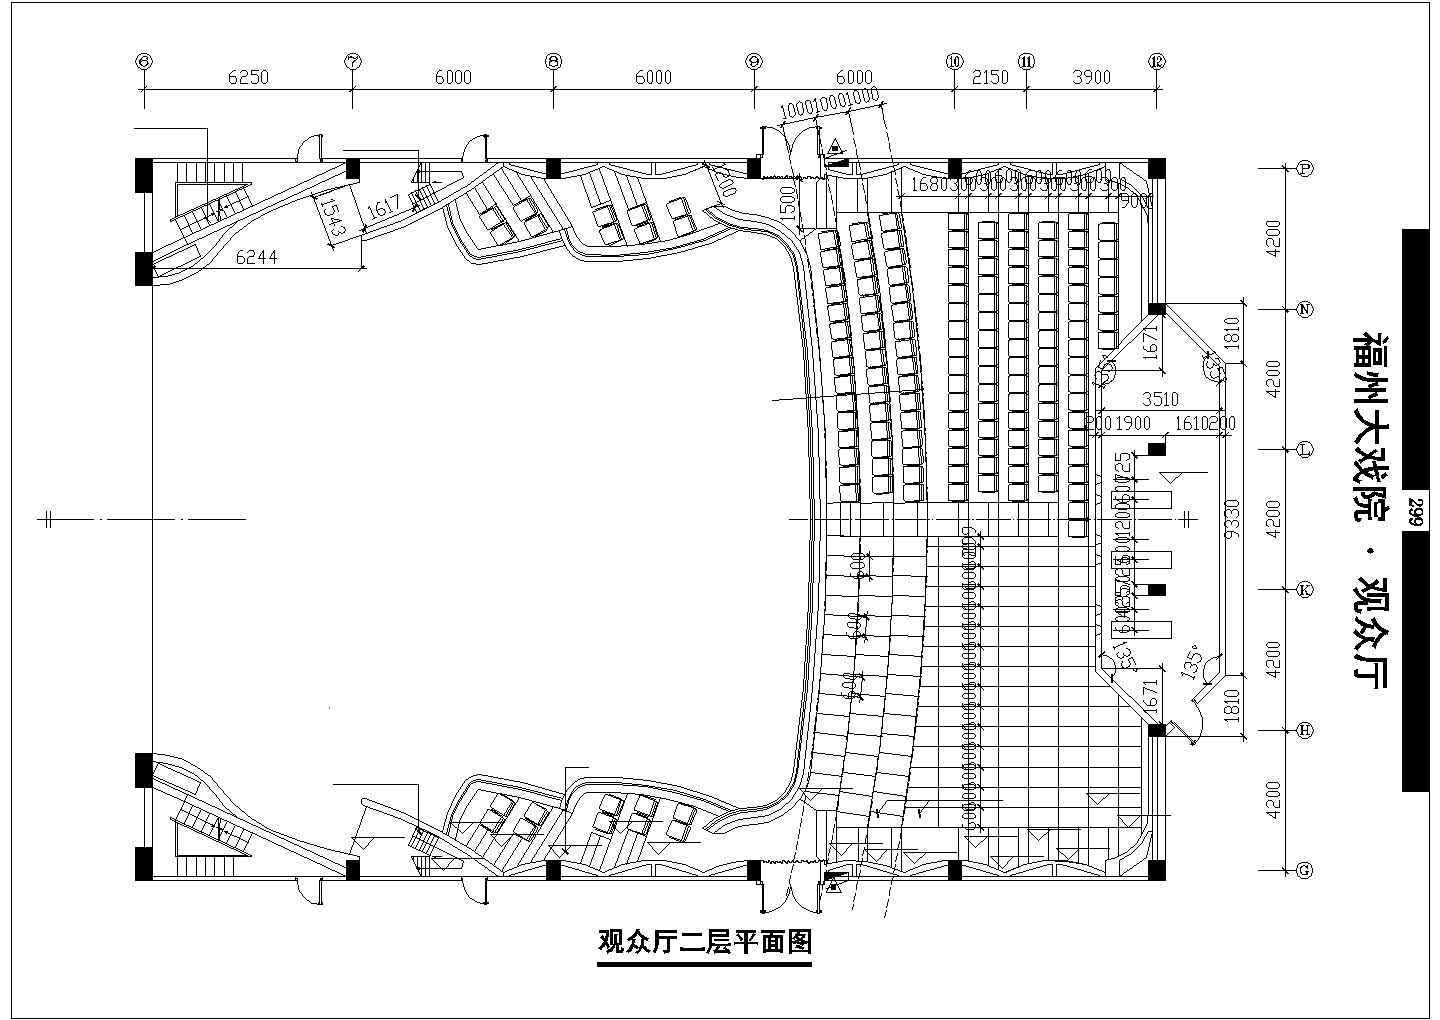 北京市朝阳区某高档酒店大堂装修设计CAD图纸